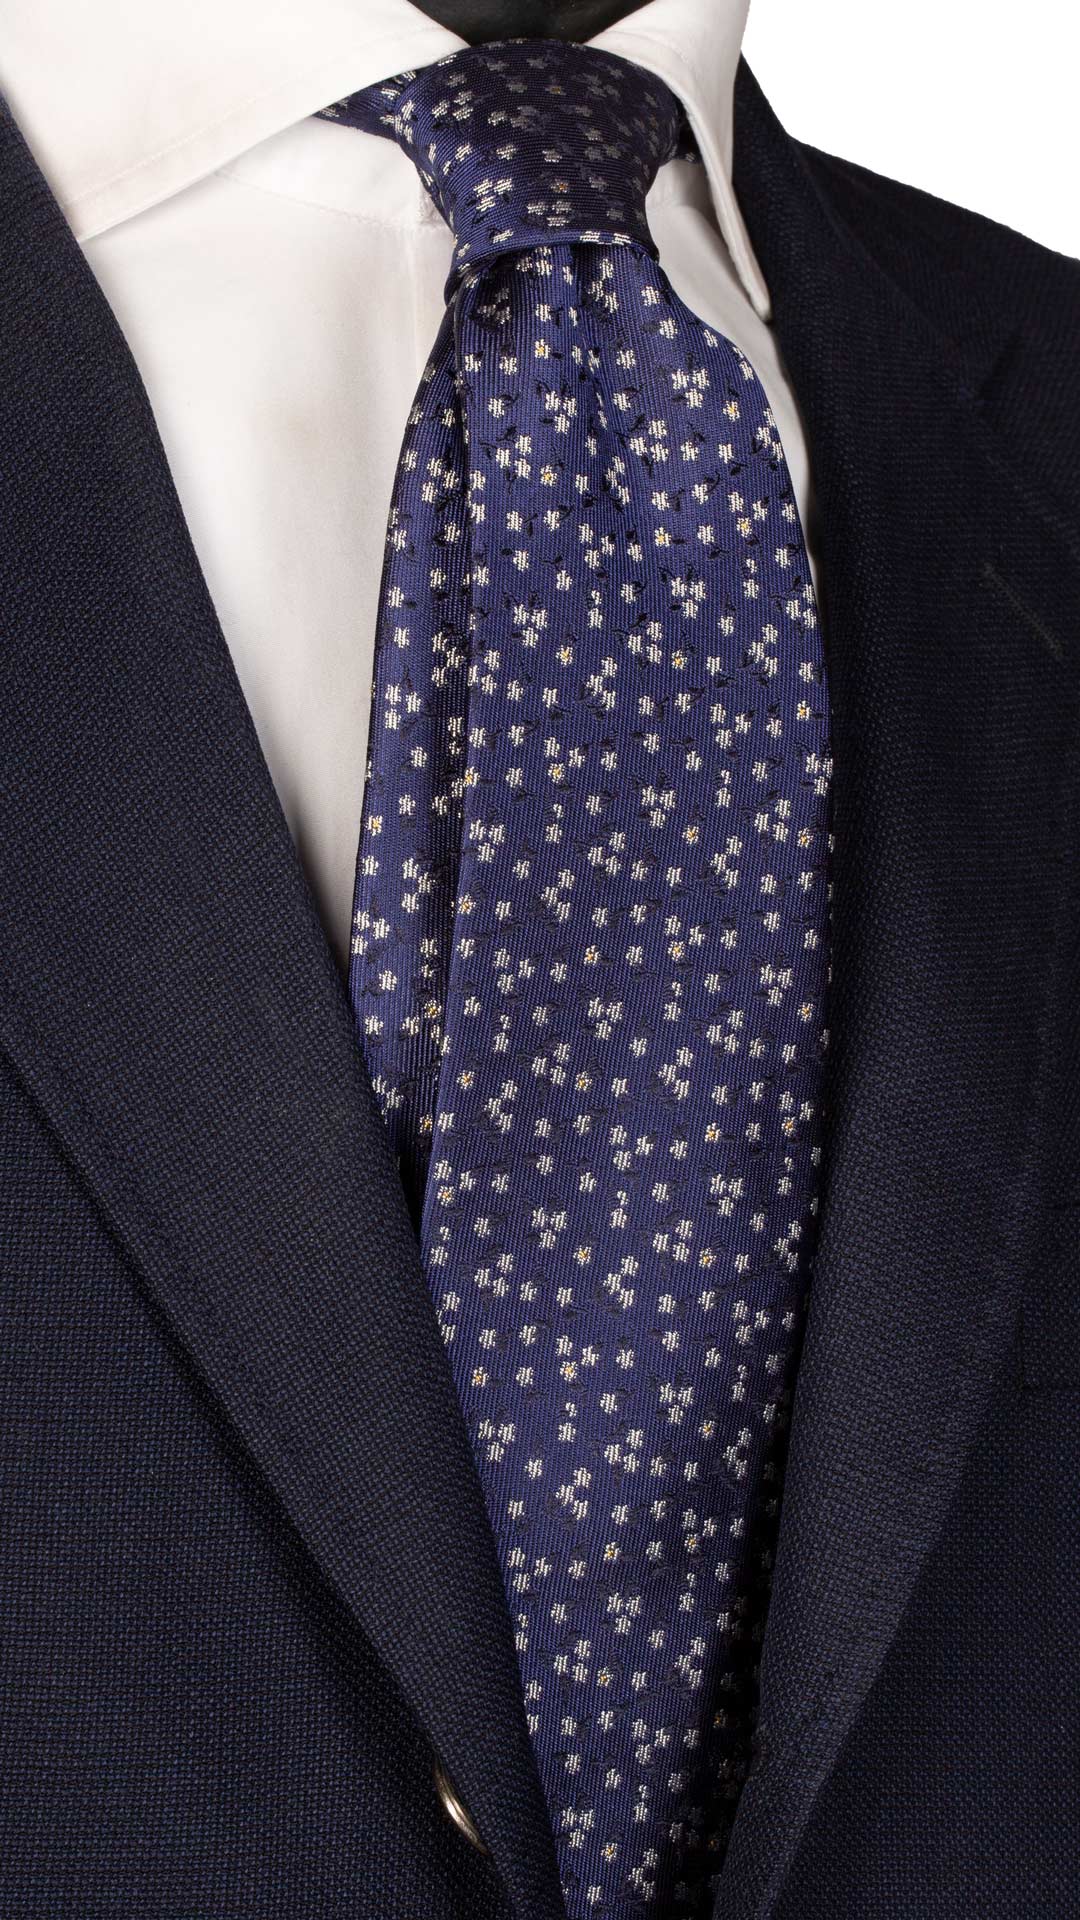 Cravatta da Cerimonia di Seta Bluette a Fiori Bianco Giallo Made in italy Graffeo Cravatte